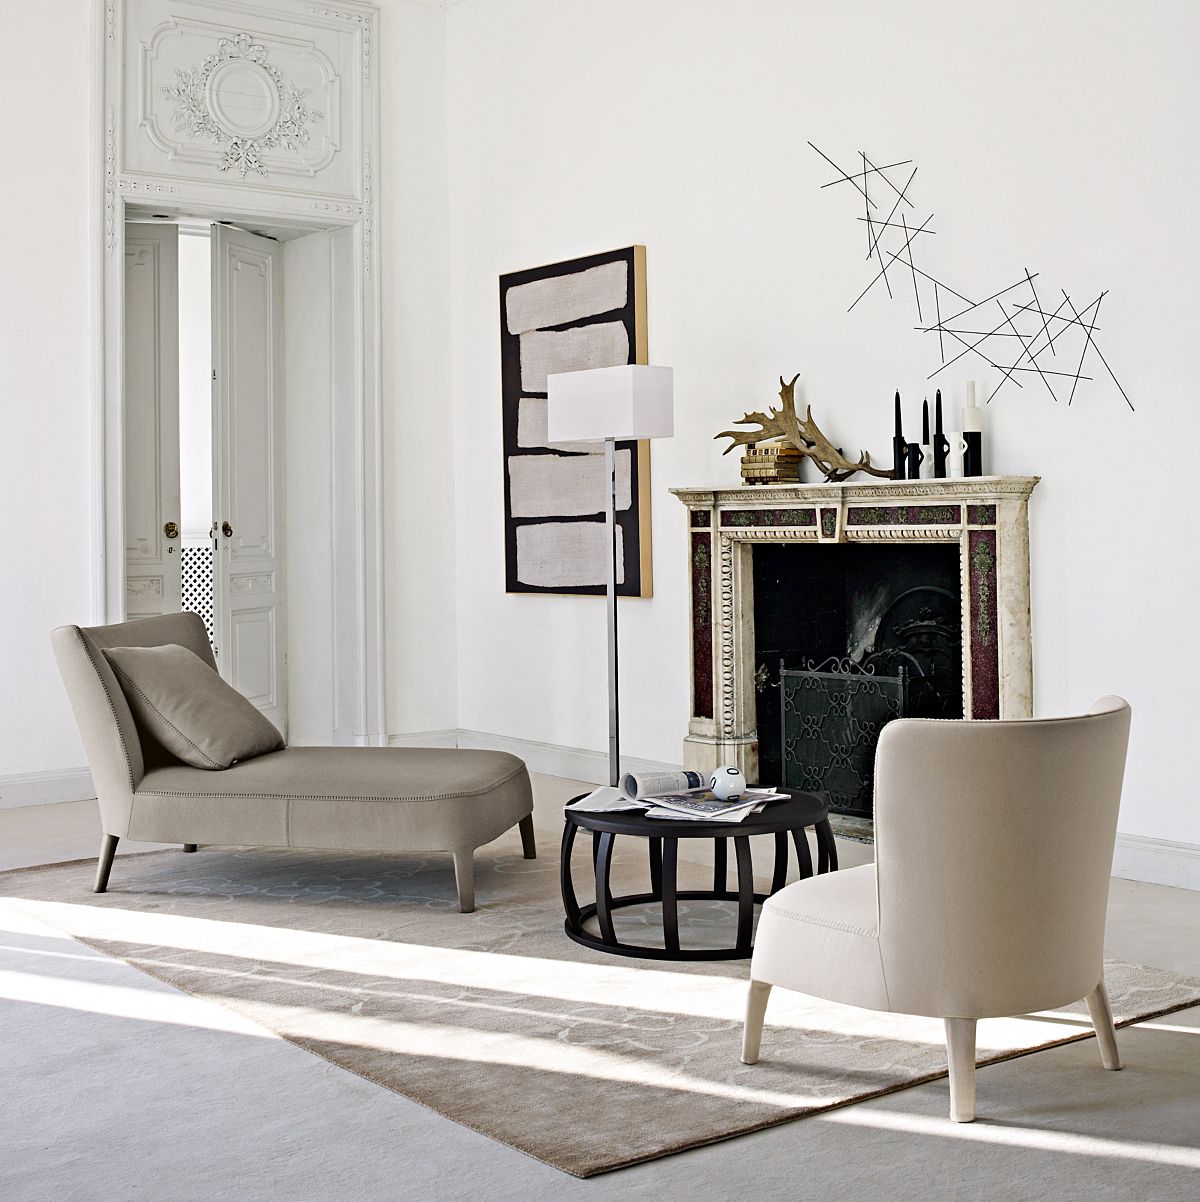 Febo stoelen en fauteuils van Maxalto zijn een herinnering aan klassiek design